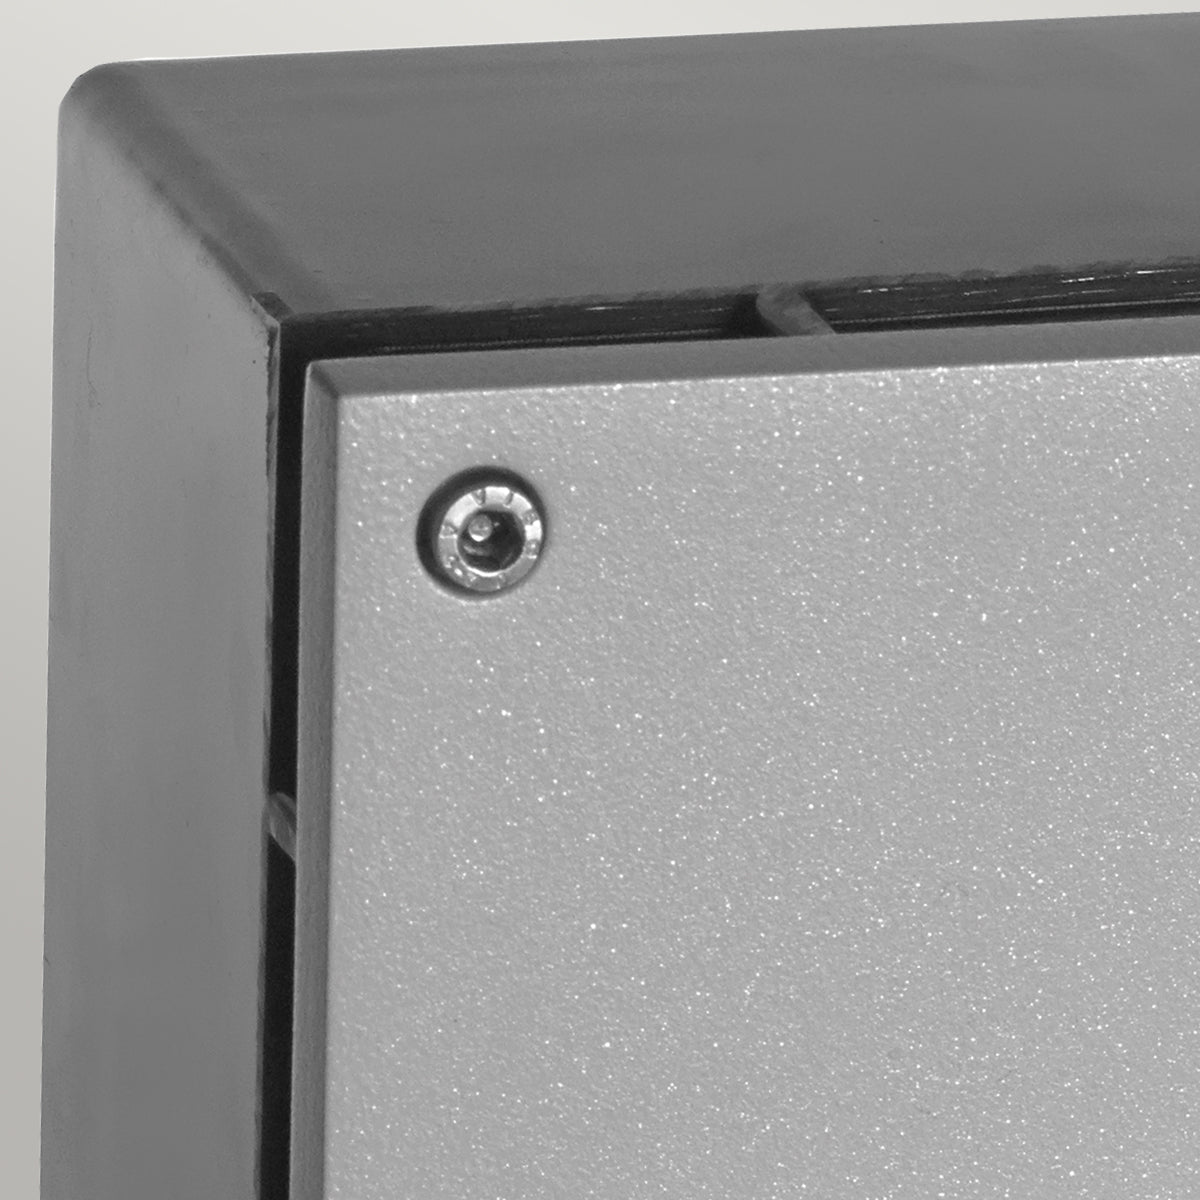 Namsos LED Recessed Wall Light - Aluminium/Galvanized/Graphite - Cusack Lighting